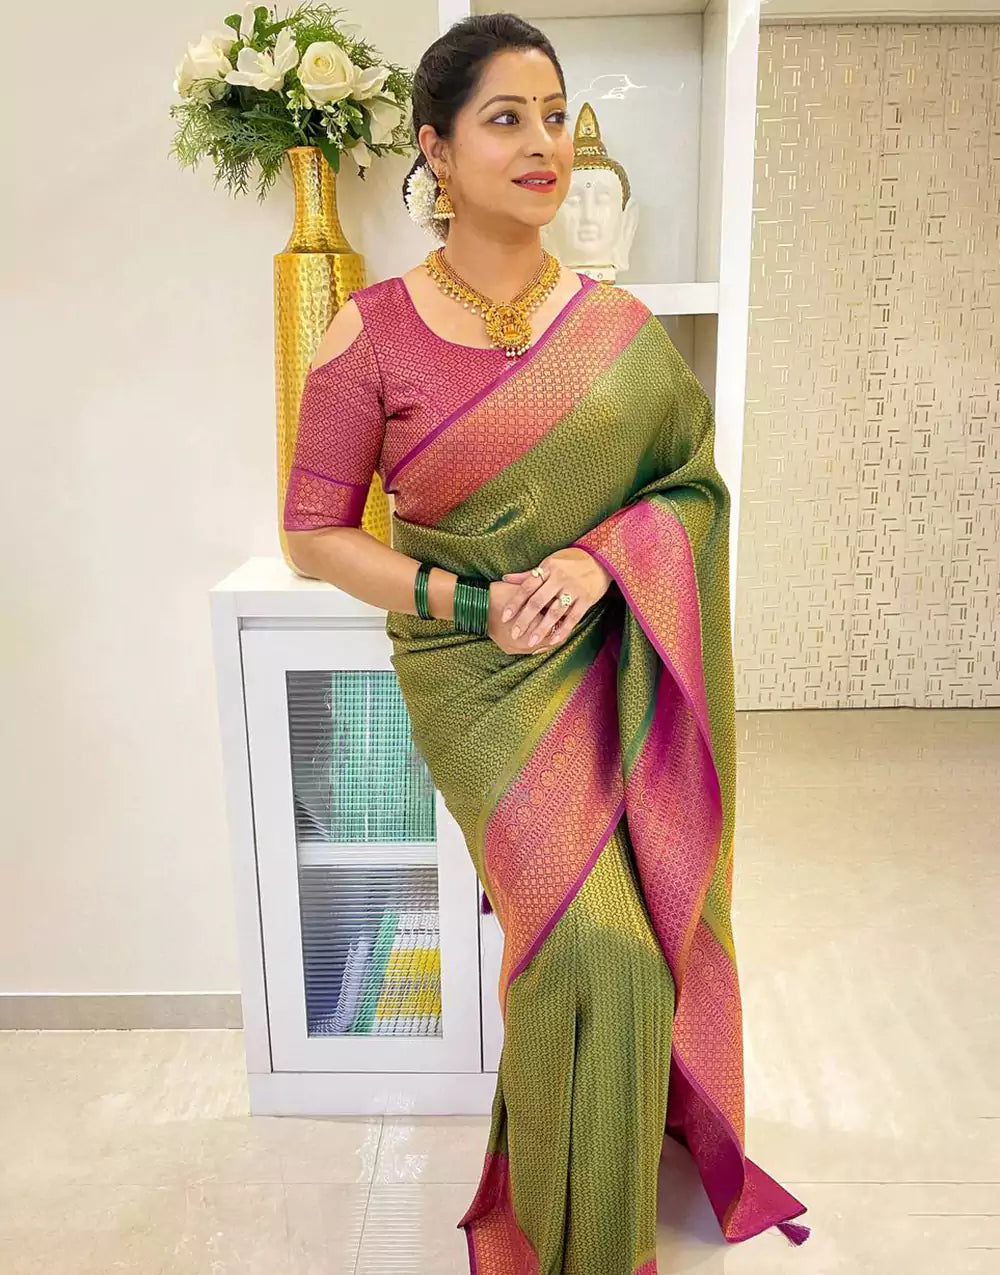 Green Colour Banarasi Soft Silk Saree With Pink Blouse